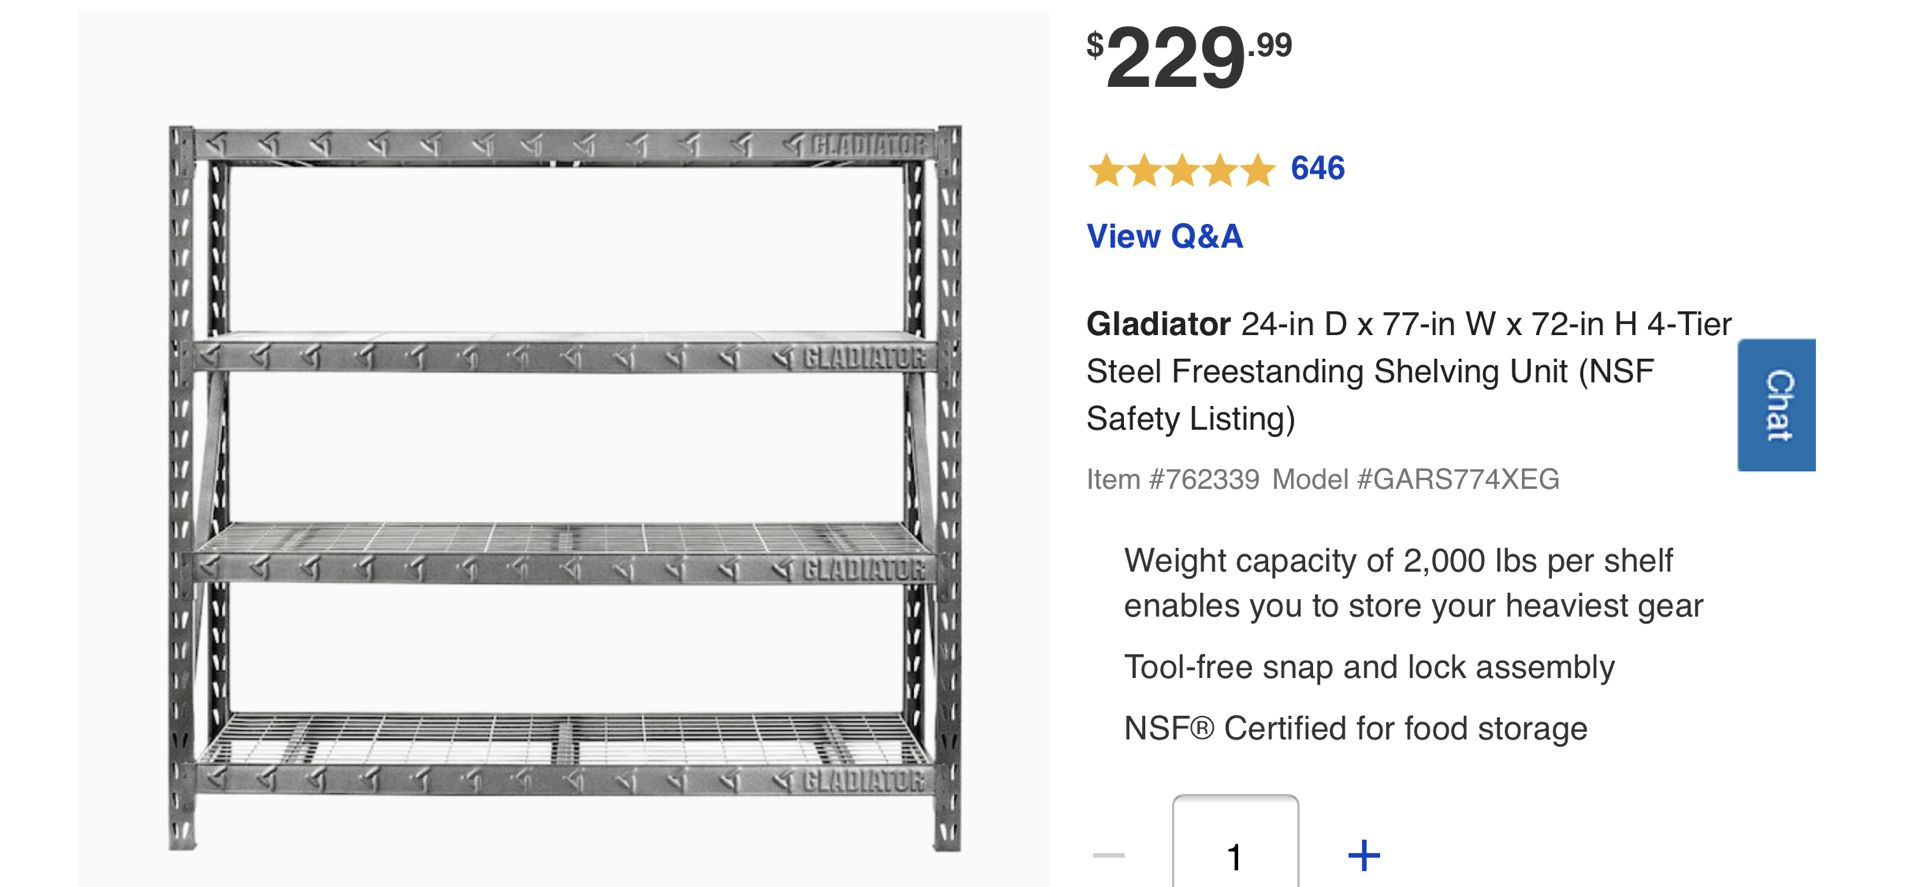 Gladiator storage shelves